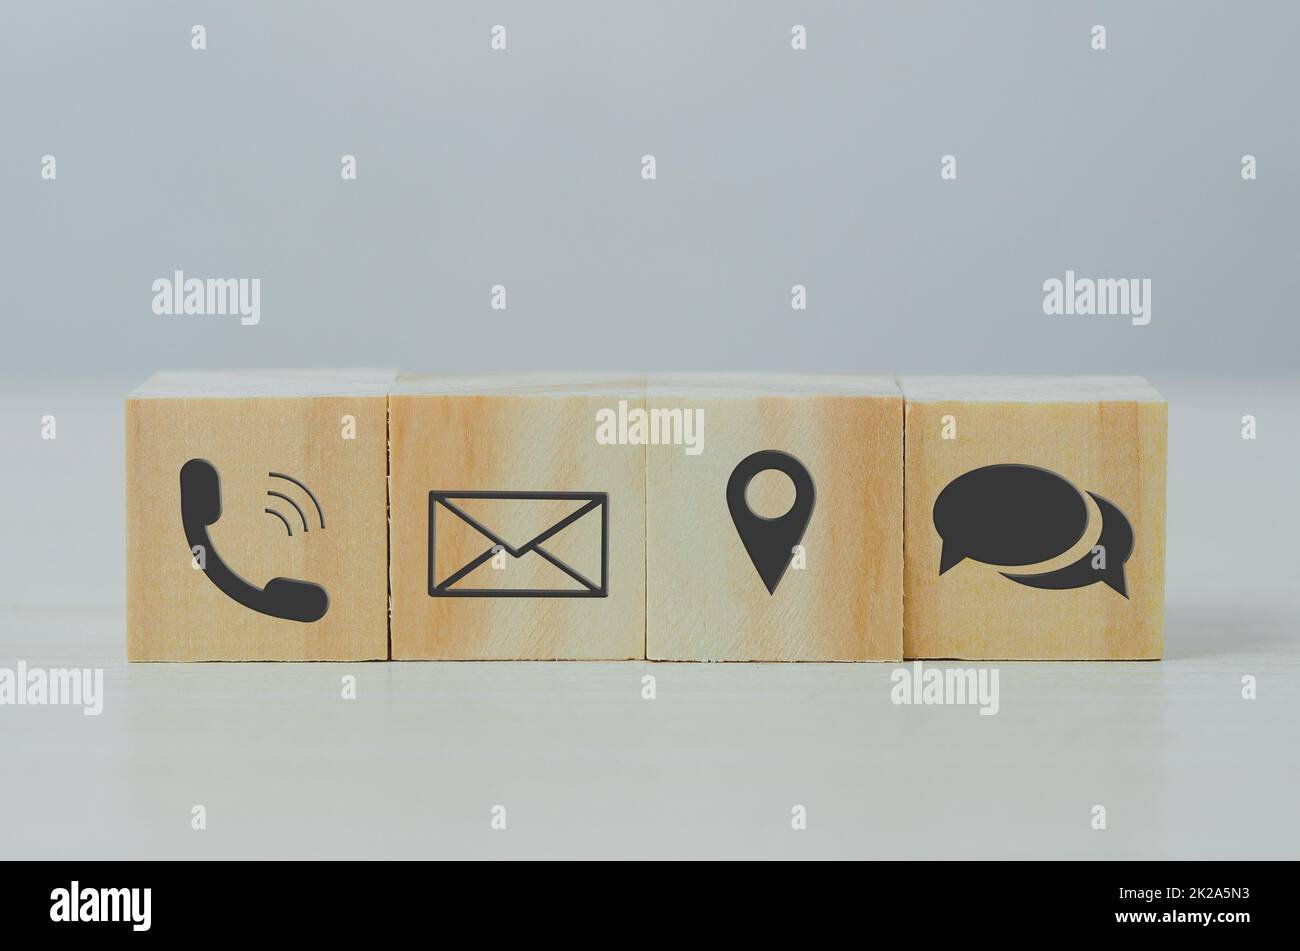 Cubo di legno icona blocco lettera telefono posizione su Table.Business comunicazione e concetto di rete sociale. Foto Stock